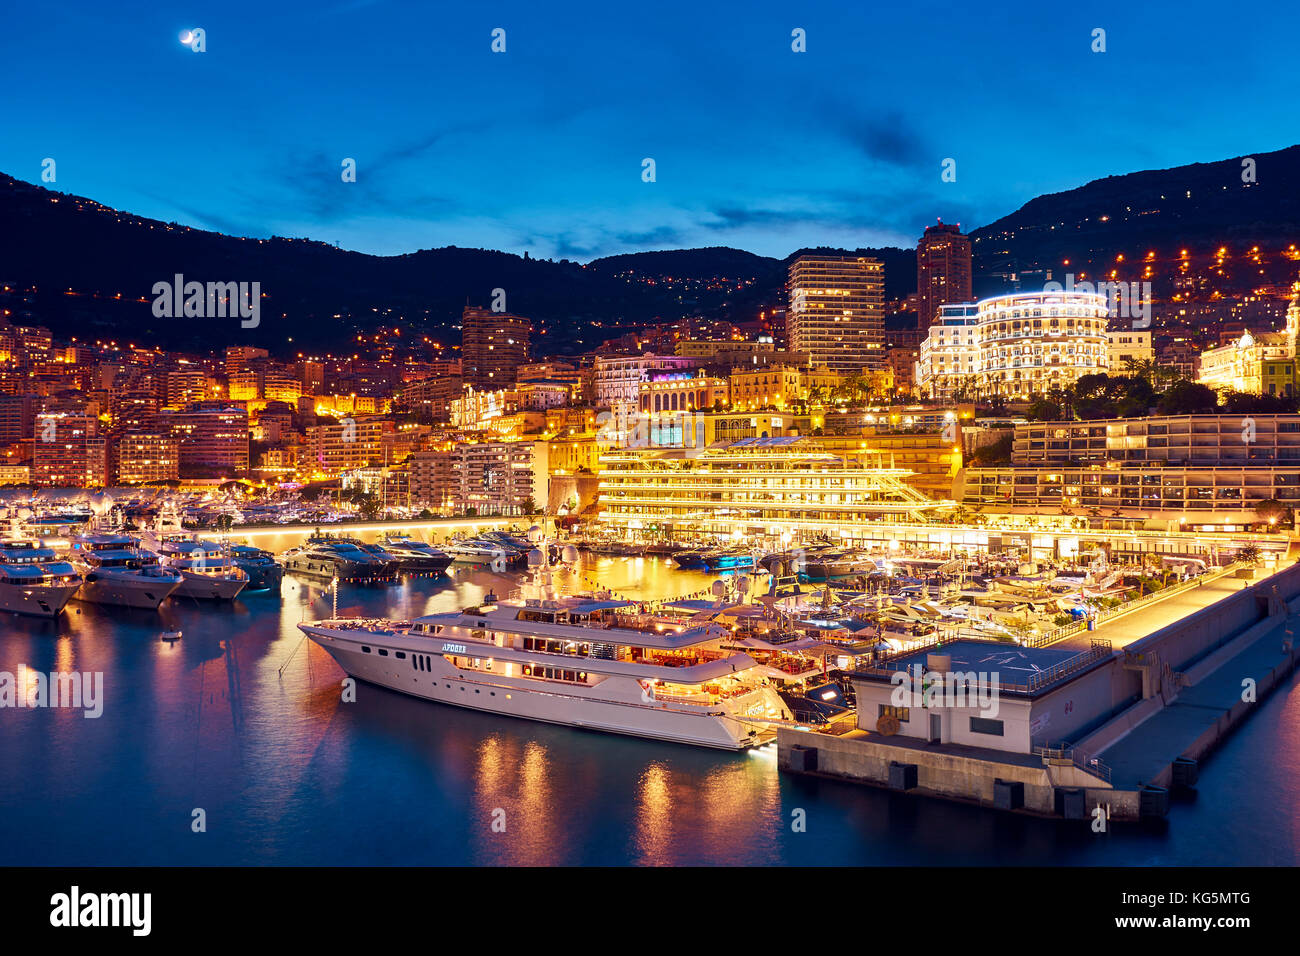 Montecarlo par nuit, Monaco, principauté de monaco, cote d'azur, sud de la France, l'Europe occidentale, Europe Banque D'Images